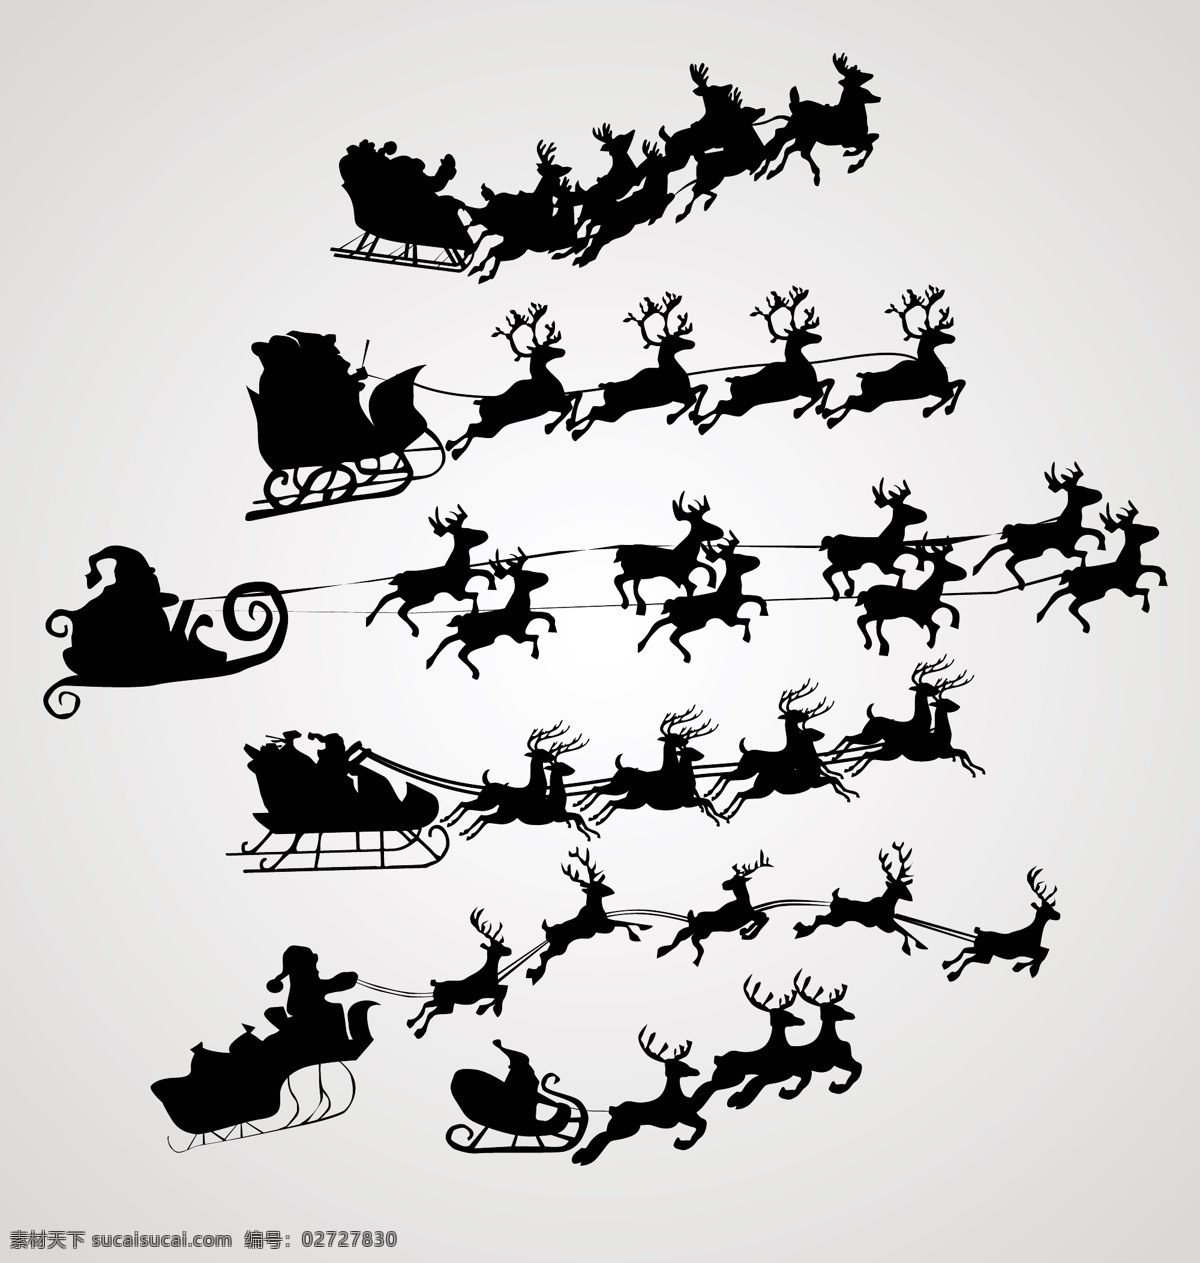 矢量 空中 飞过 圣诞老人 剪影 拉车 麋鹿 圣诞节 矢量素材 雪橇 节日素材